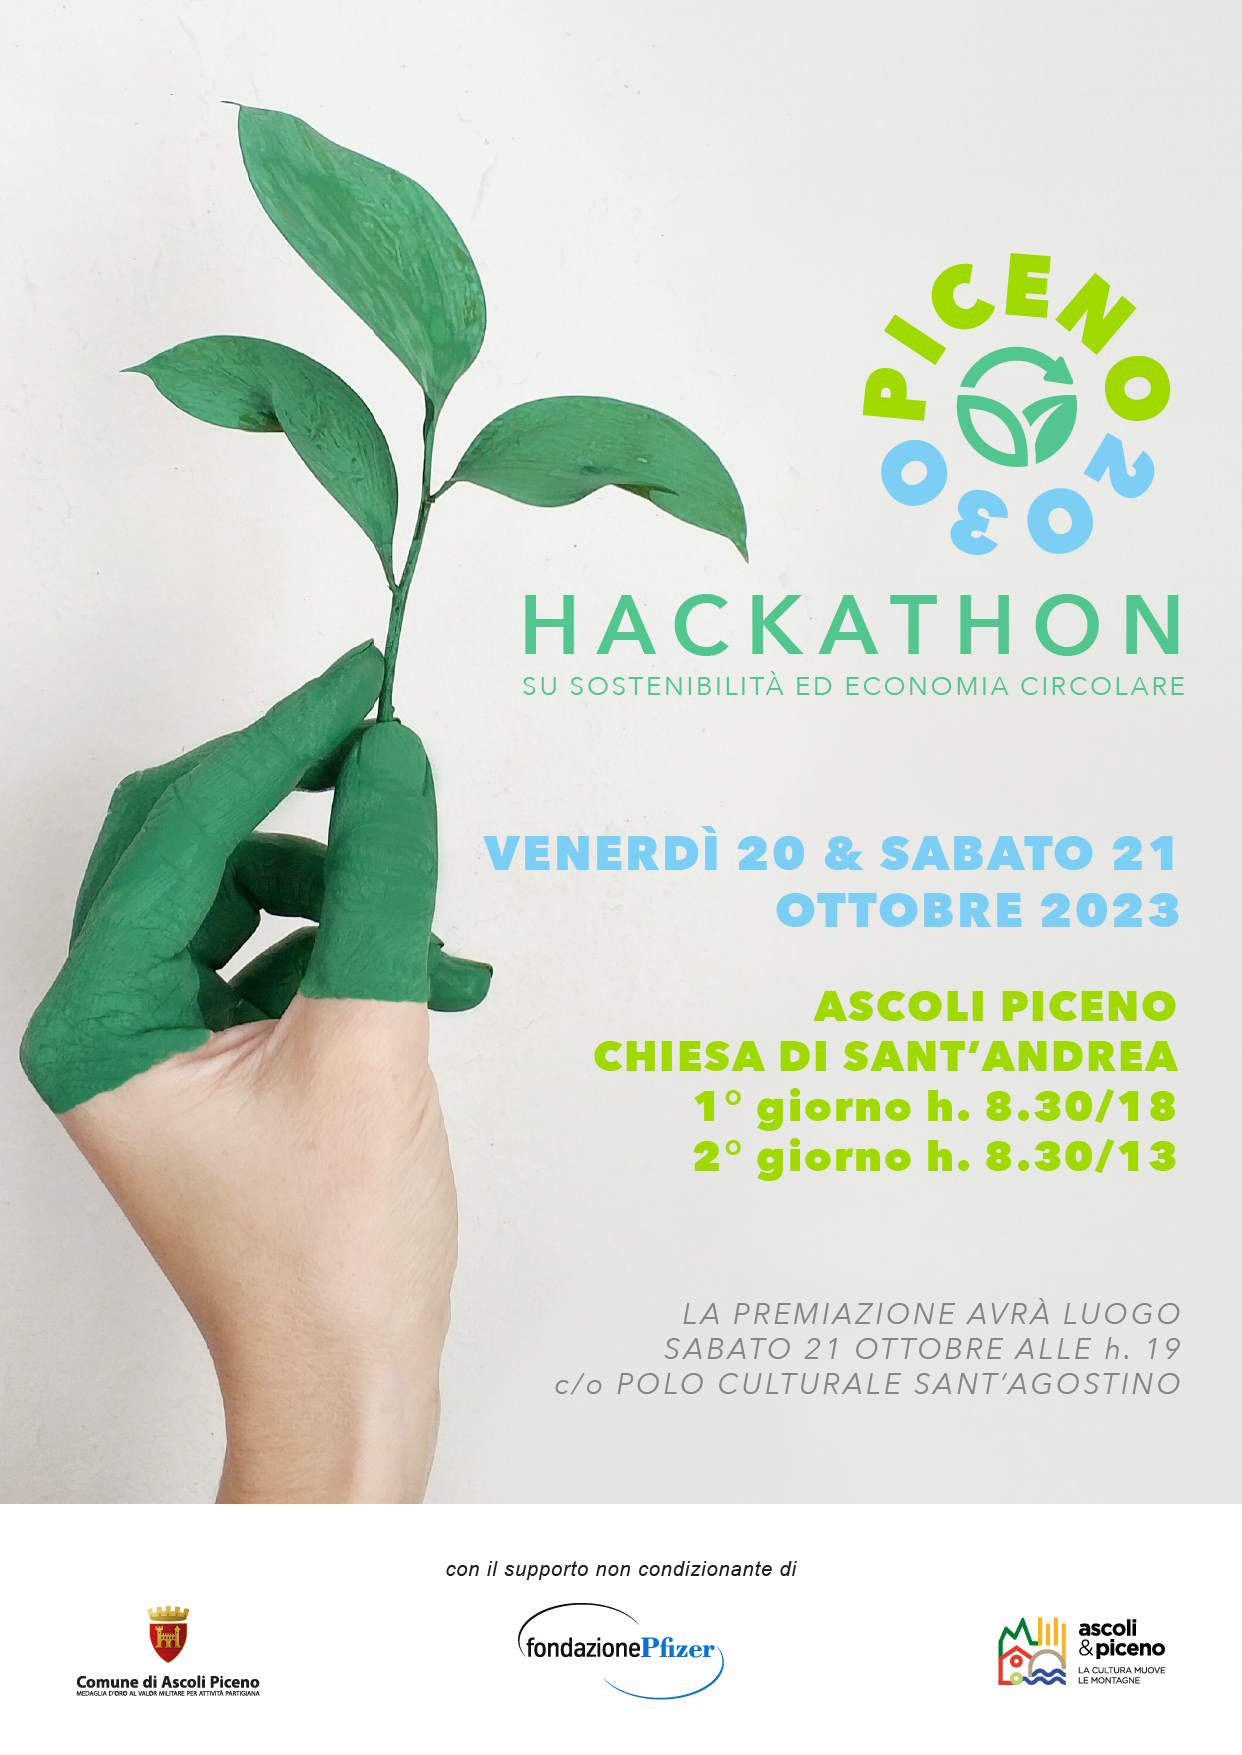 Piceno2030: Hackathon su sostenibilità ed economia circolare